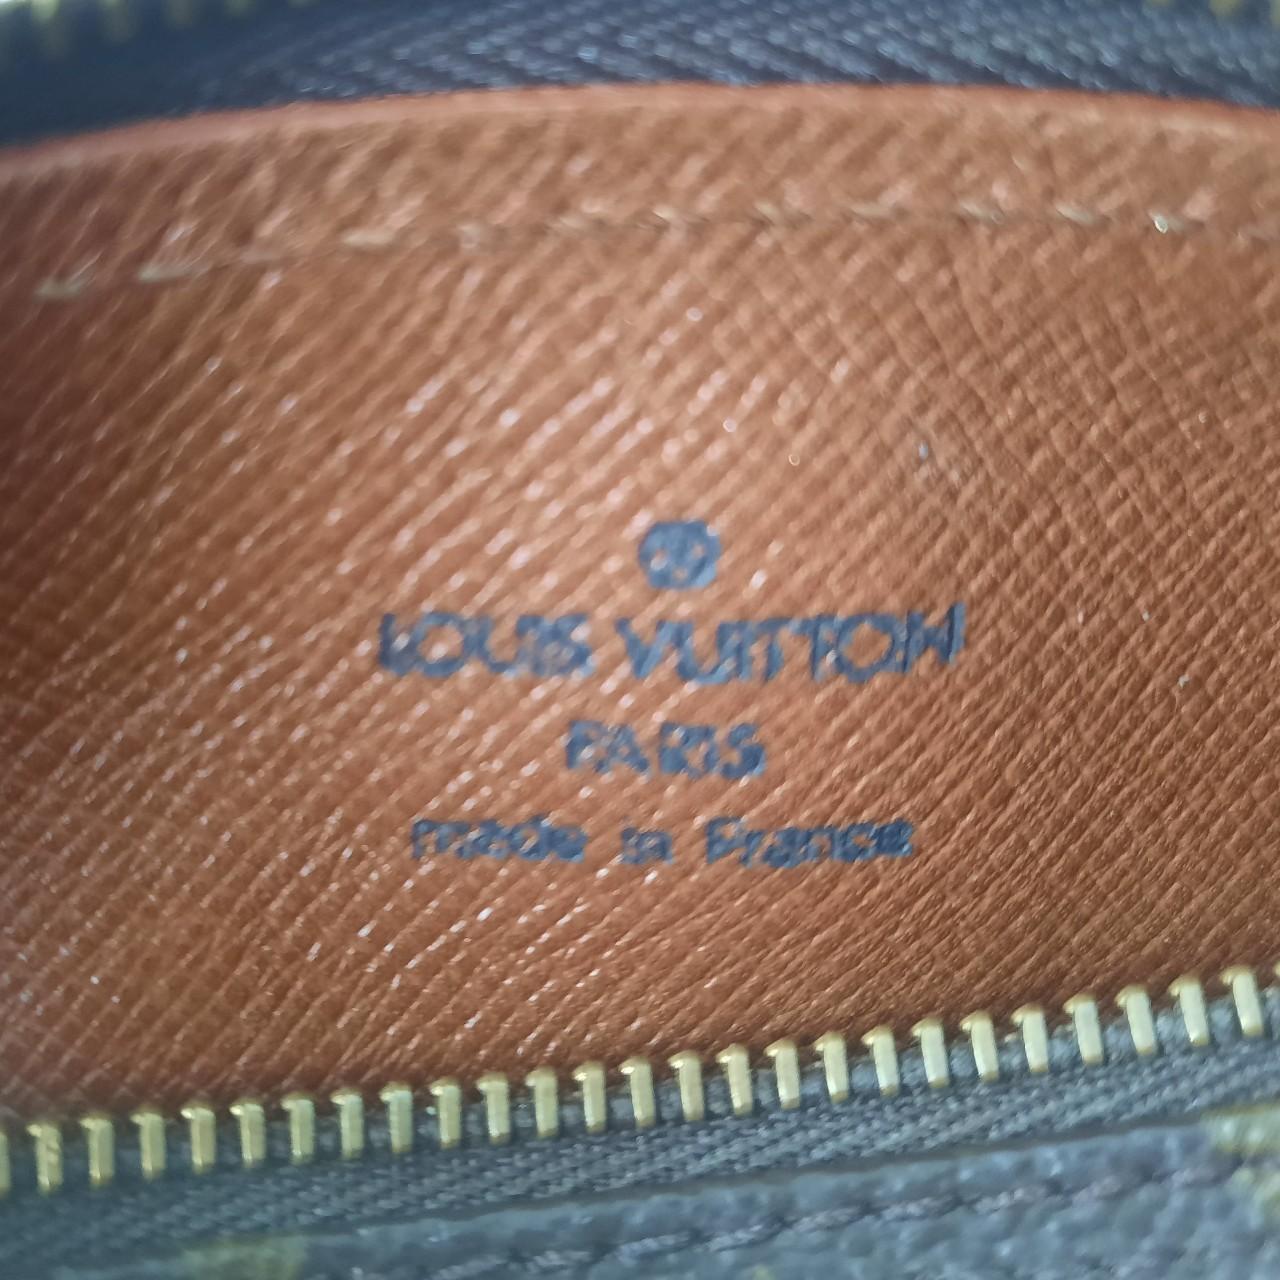 Authentic Louis Vuitton Mini Papillion 19 Bag - Depop